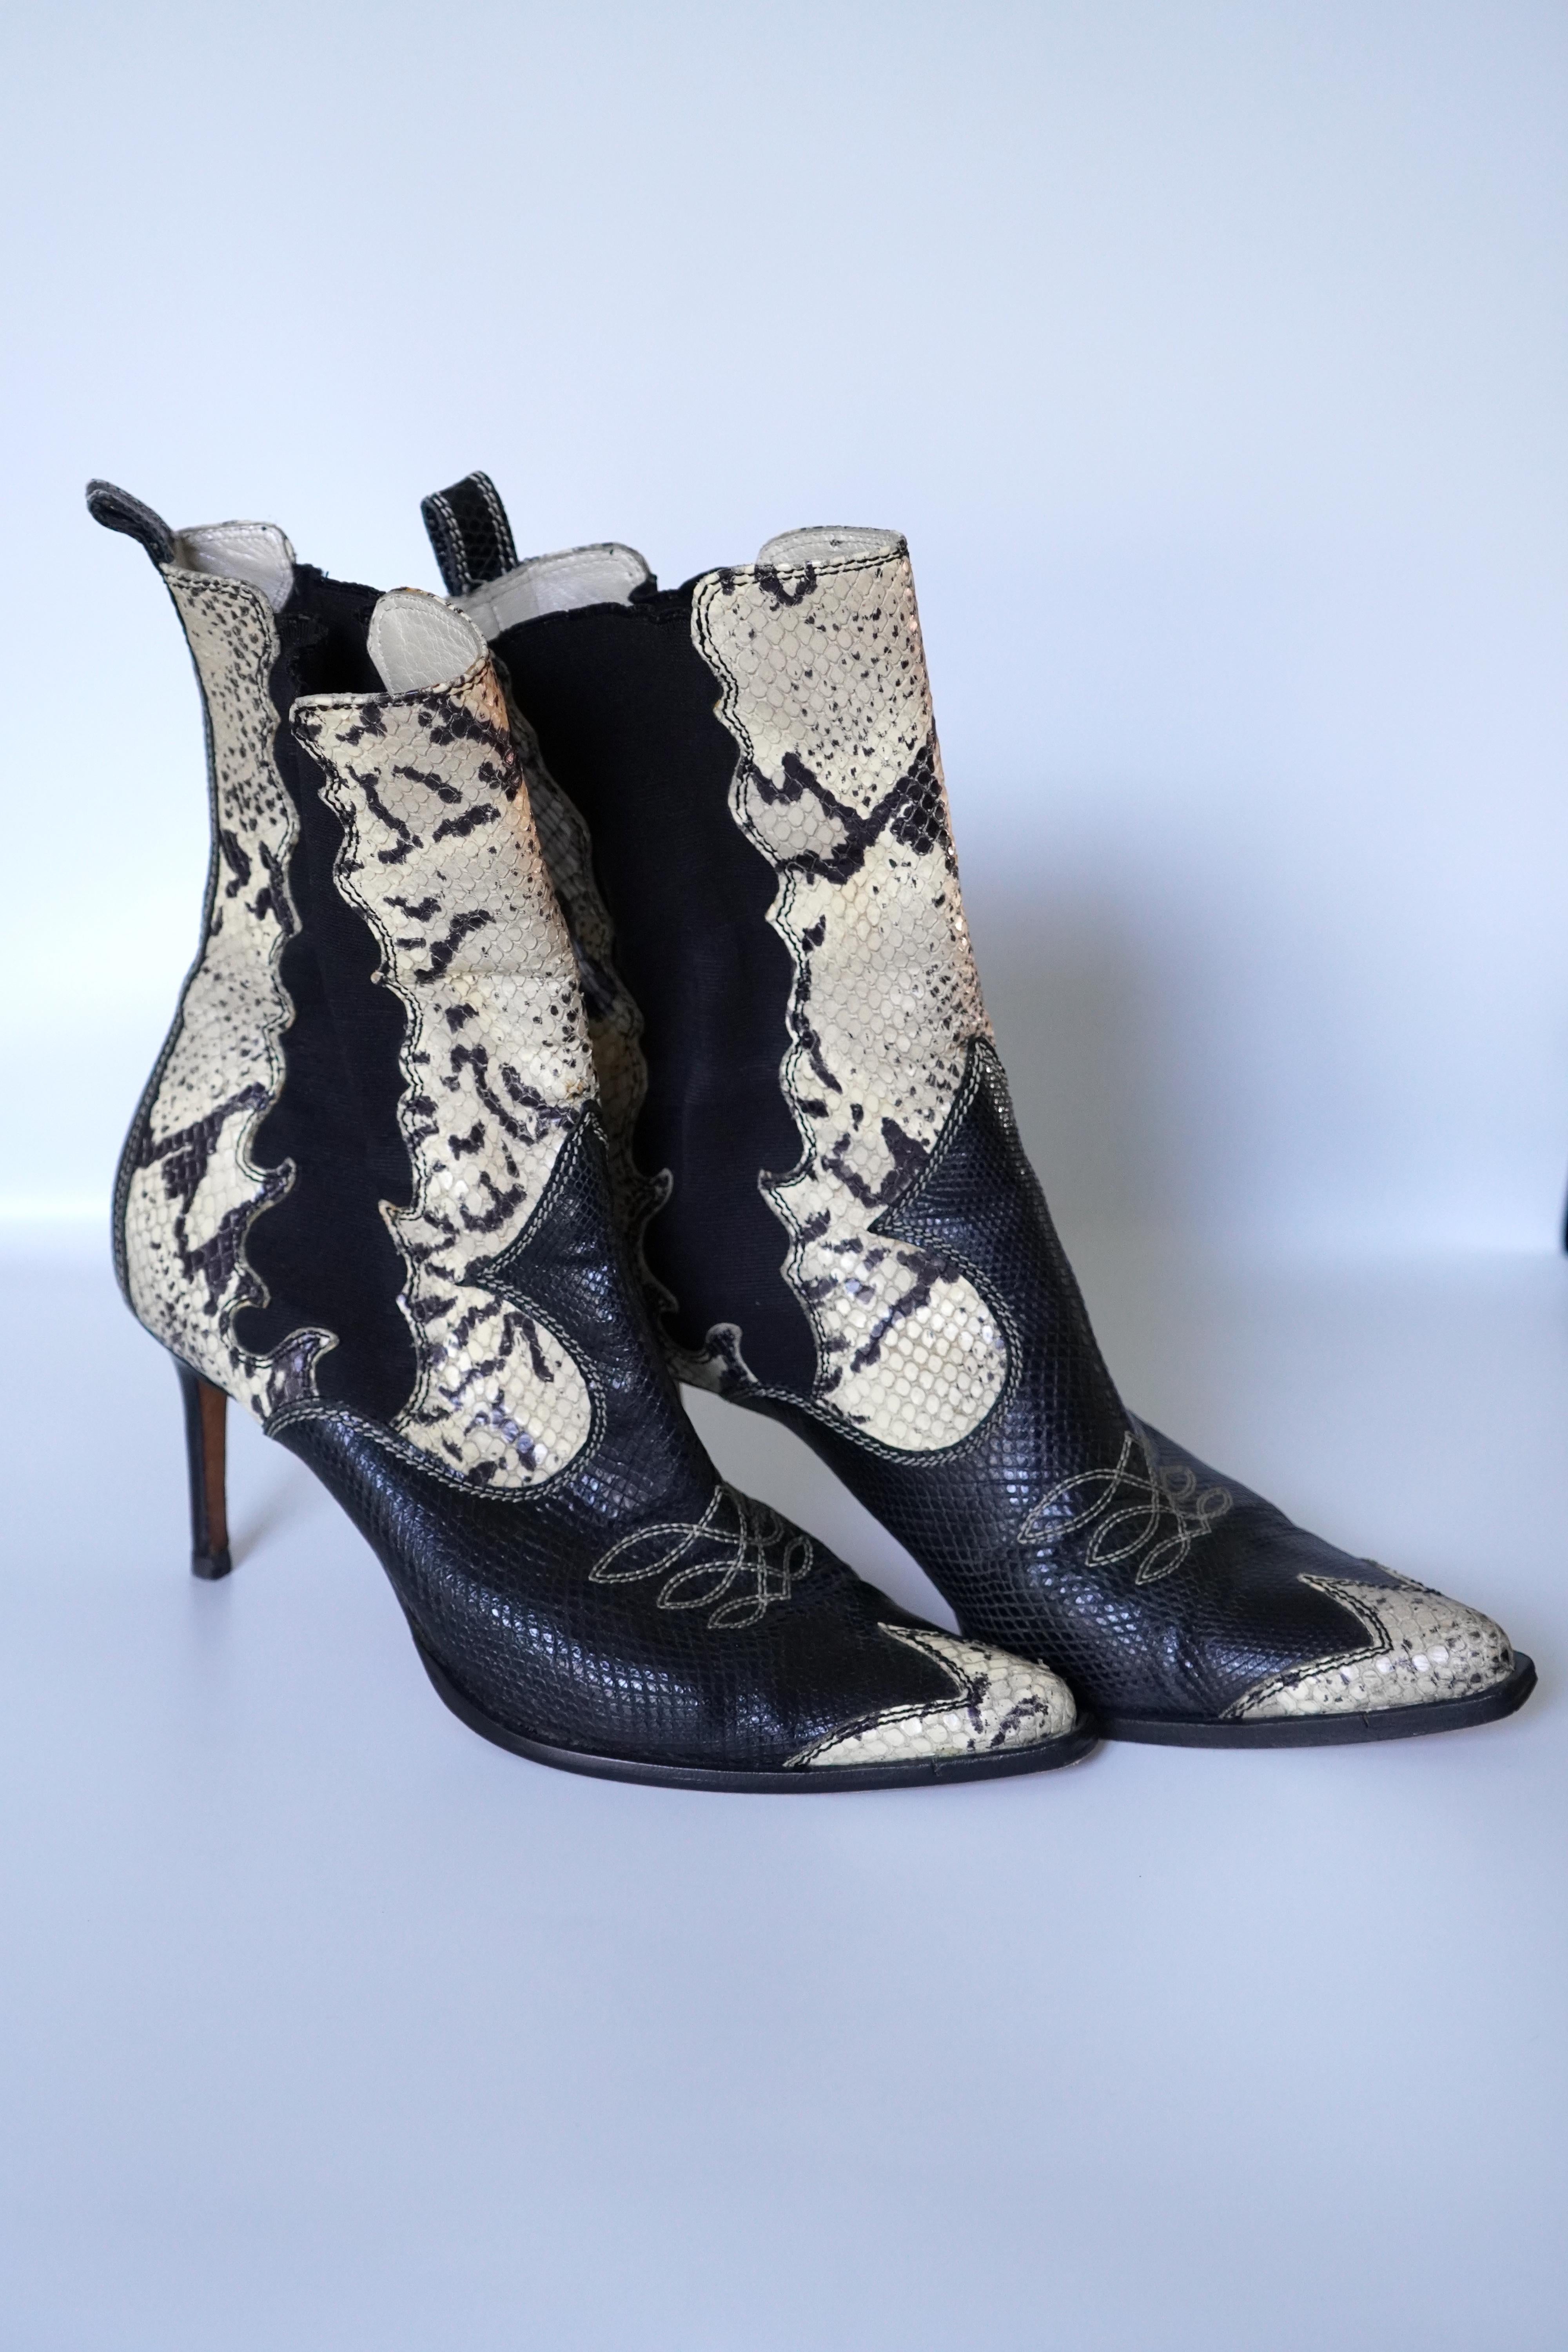 Ces magnifiques bottes Dior, au design western, sont en cuir exotique. Ce sont des bottes à enfiler, avec un talon d'une hauteur de 3 pouces, en taille 38,5. Elles ont été légèrement portées et sont en très bon état.